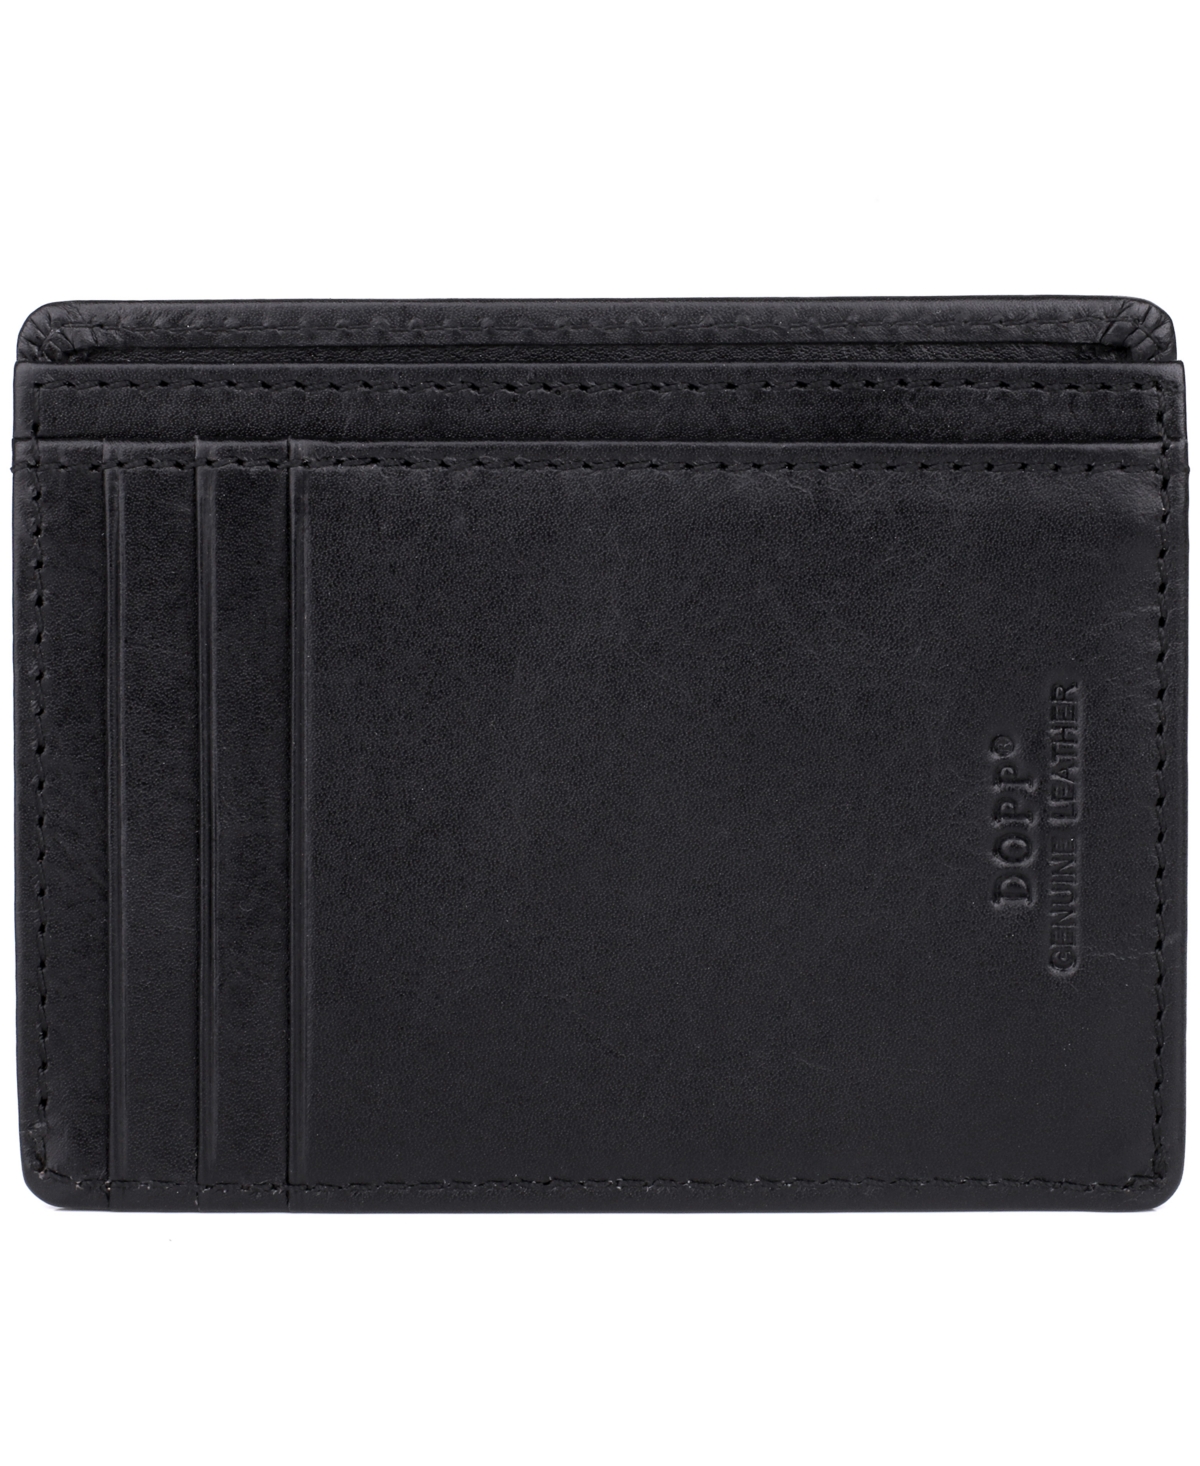 Dopp Regatta Front Pocket Get-away Wallet In Black